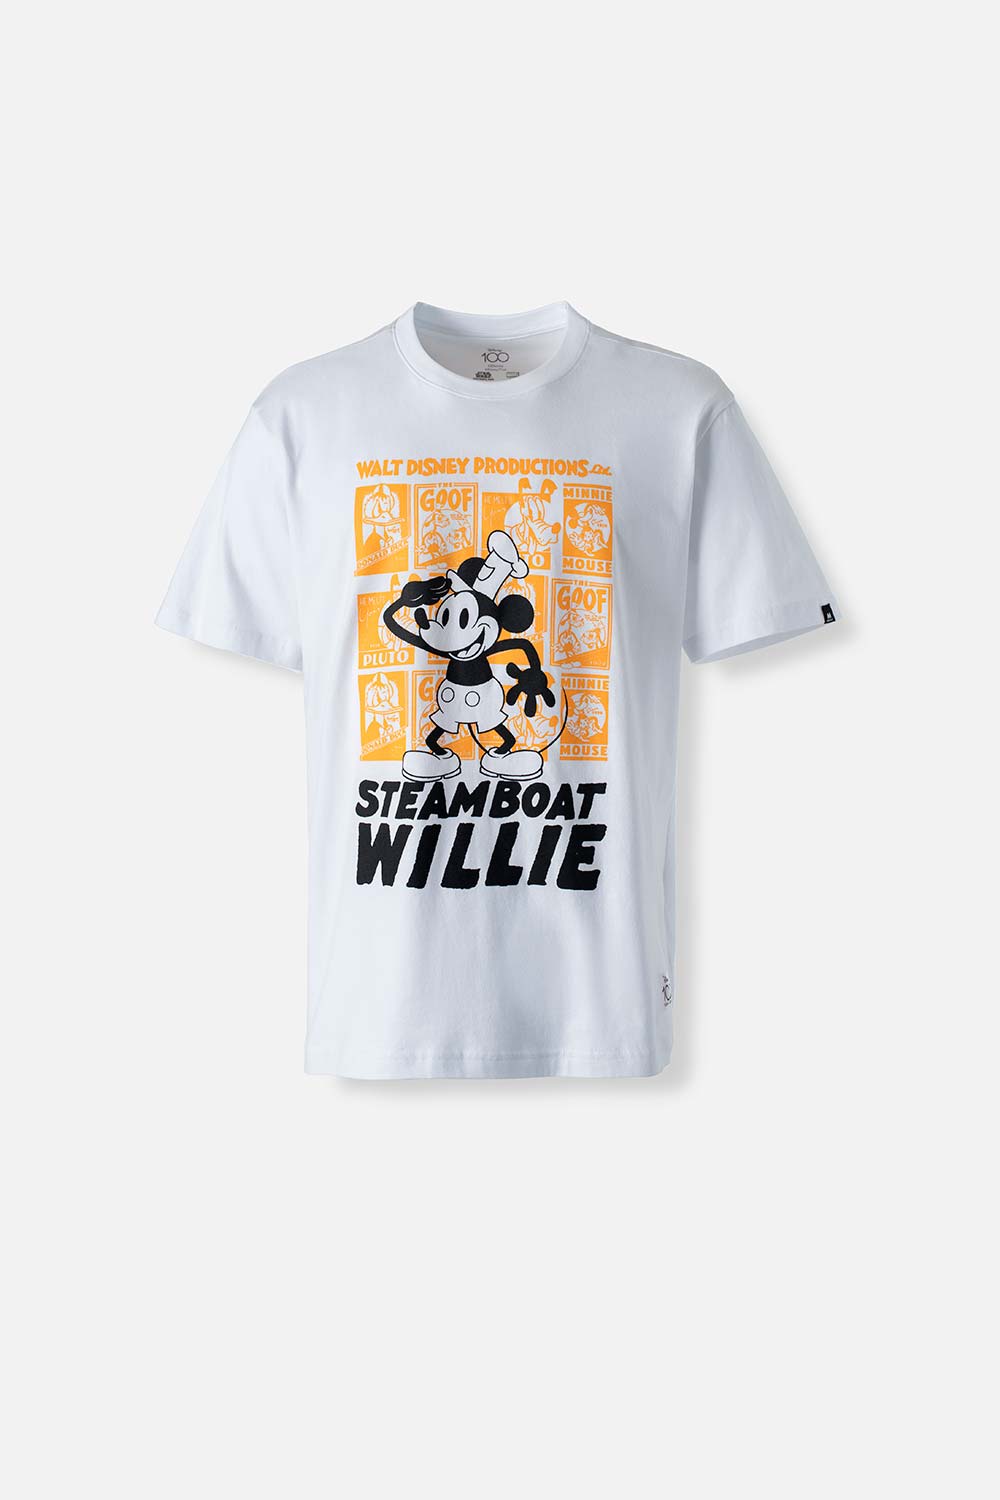 Camiseta de Mickey Mouse blanca manga corta para hombre S-0